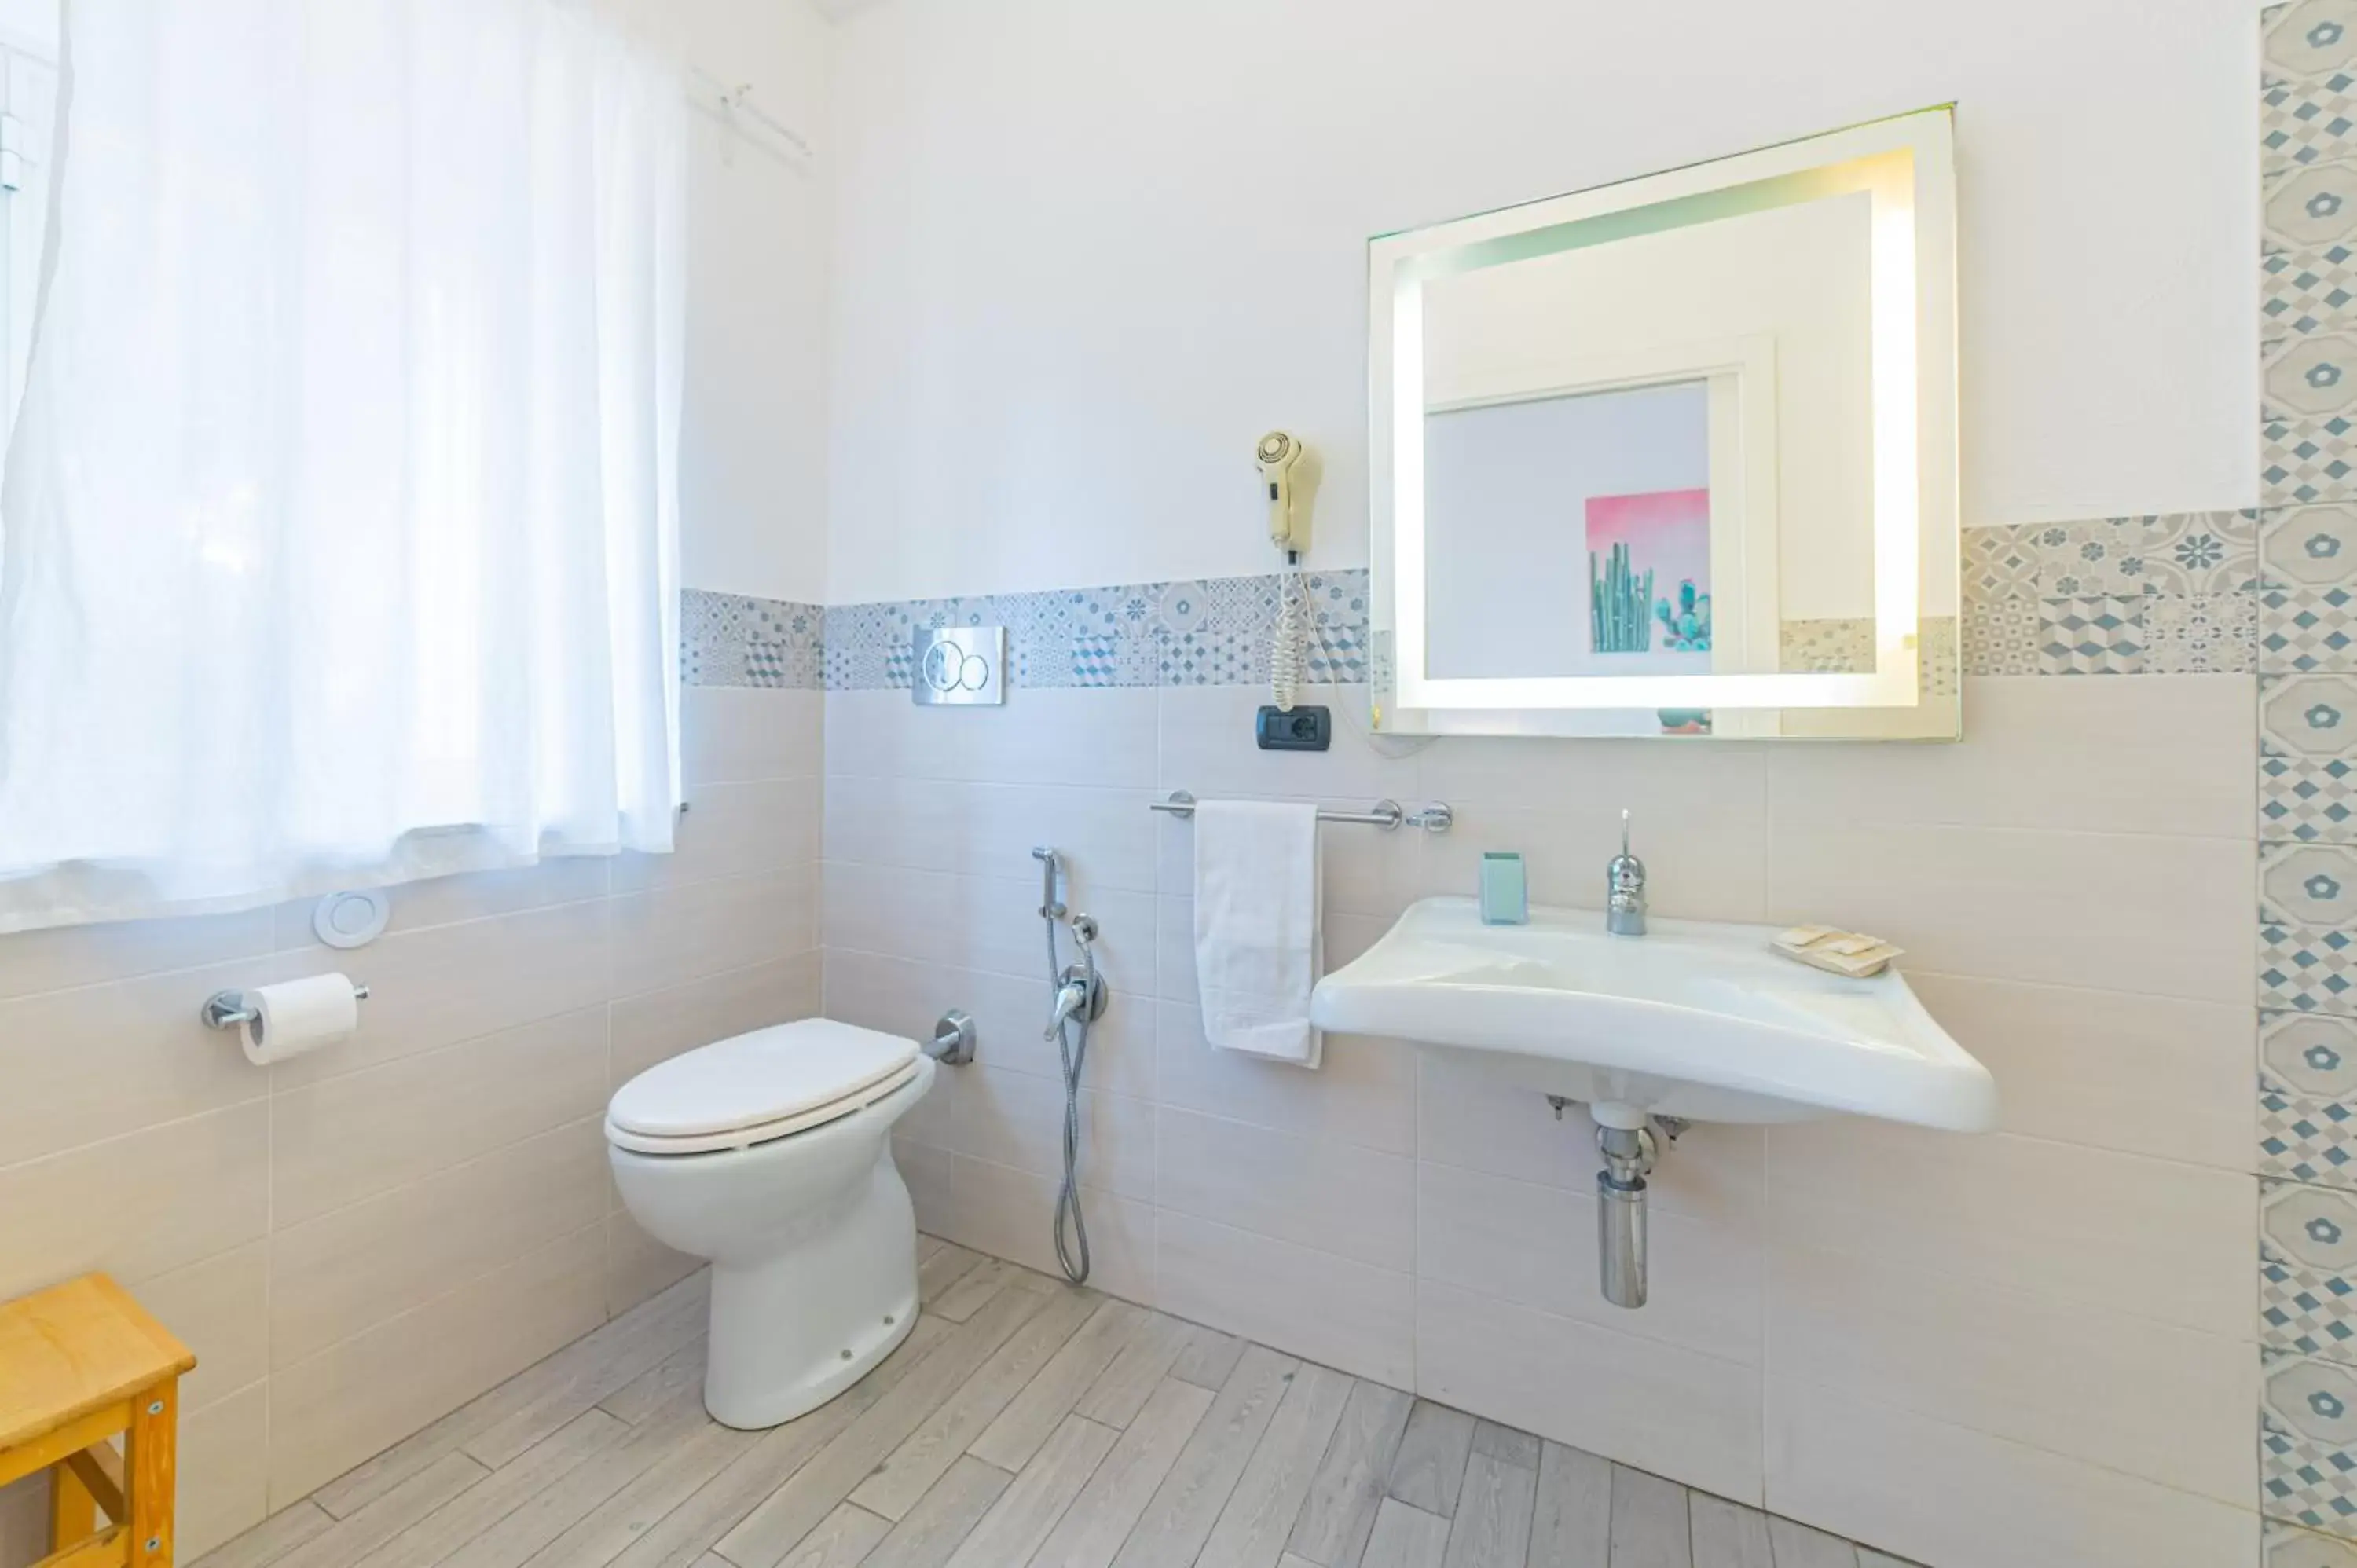 Bathroom in Hotel Villino Gallodoro